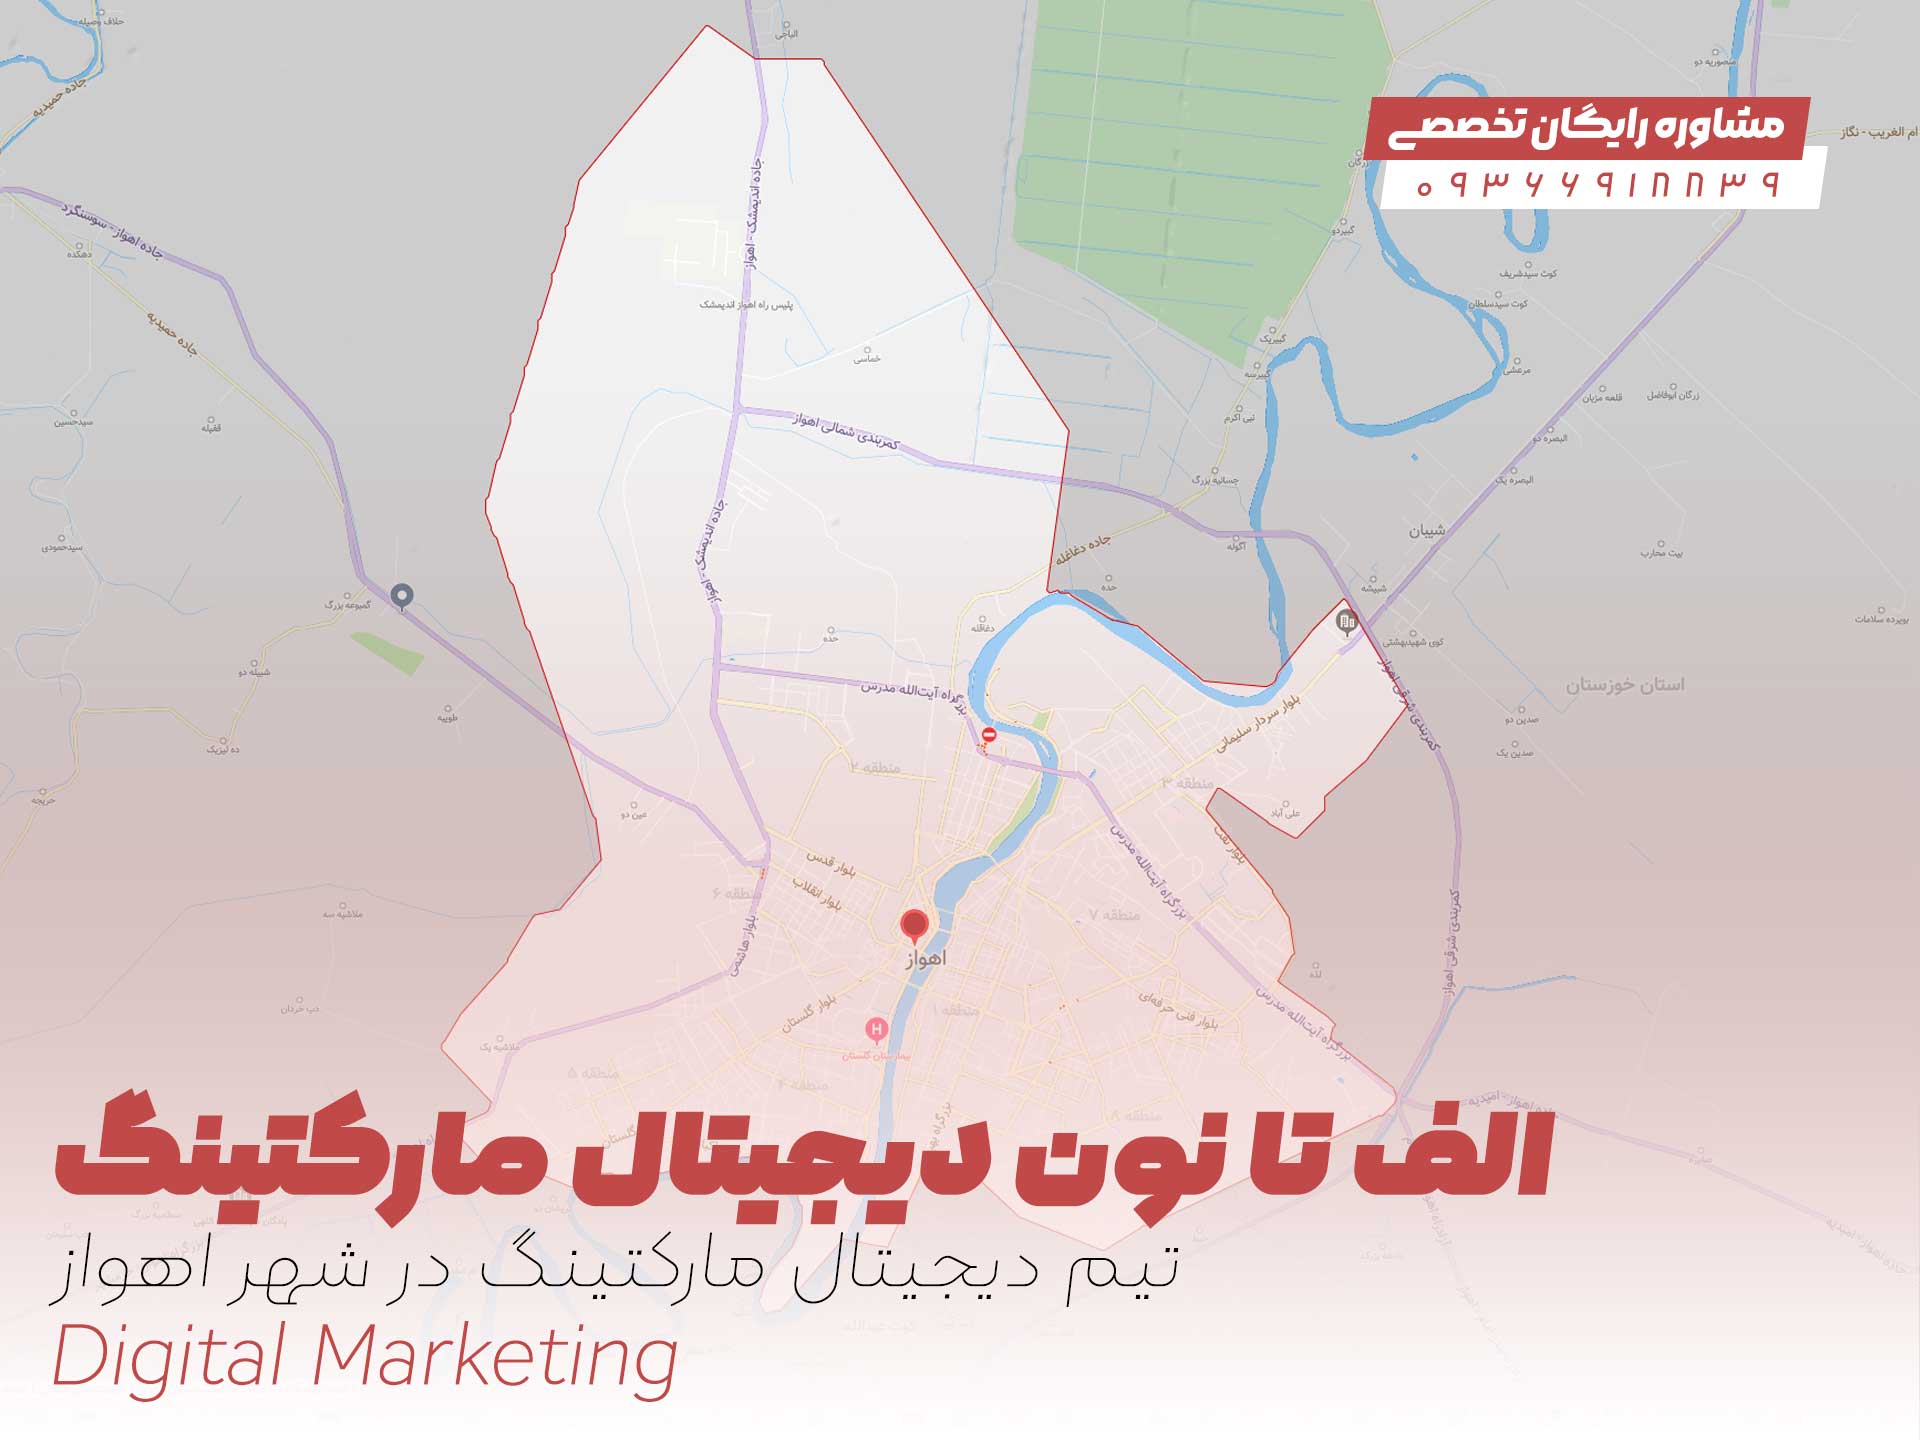 از "الف" تا "نون" دیجیتال مارکتینگ در شهر اهواز